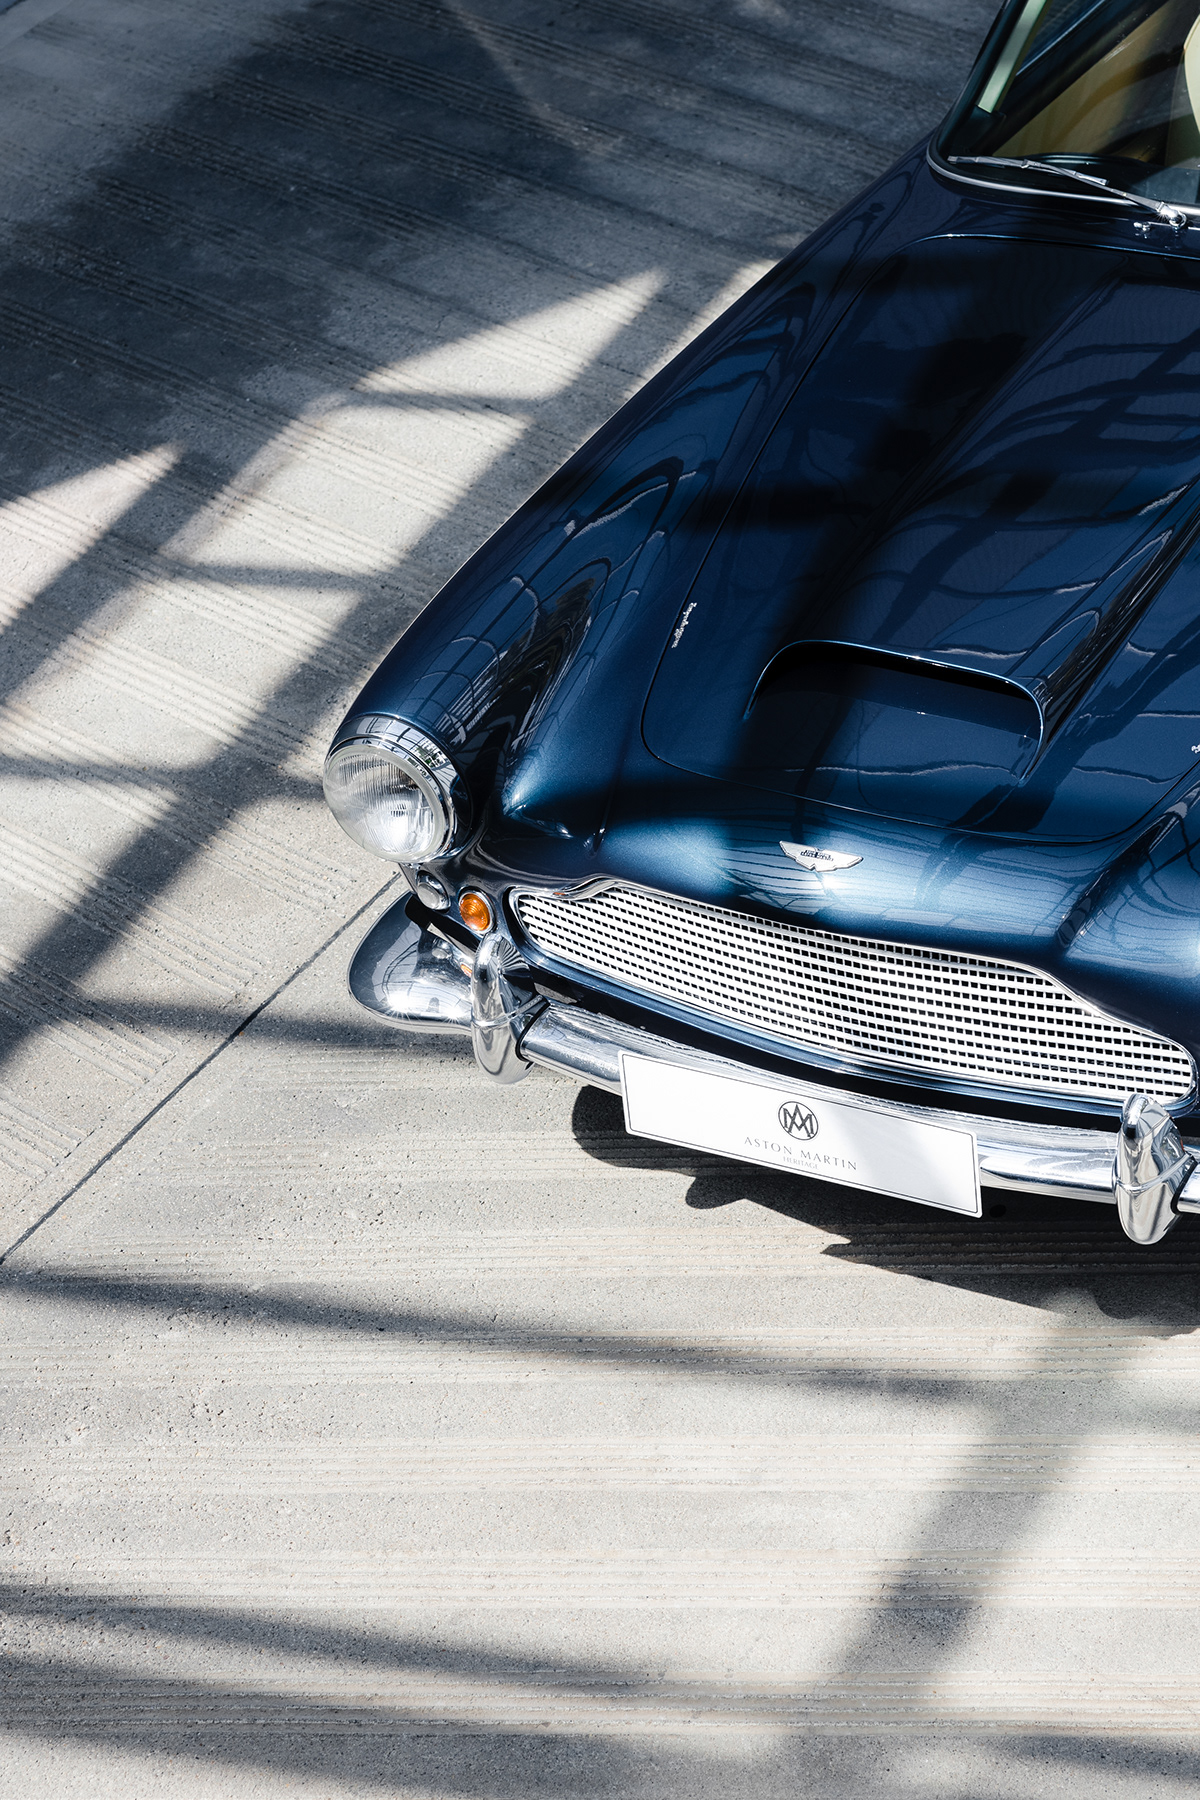 Aston Martin DB4 on Behance